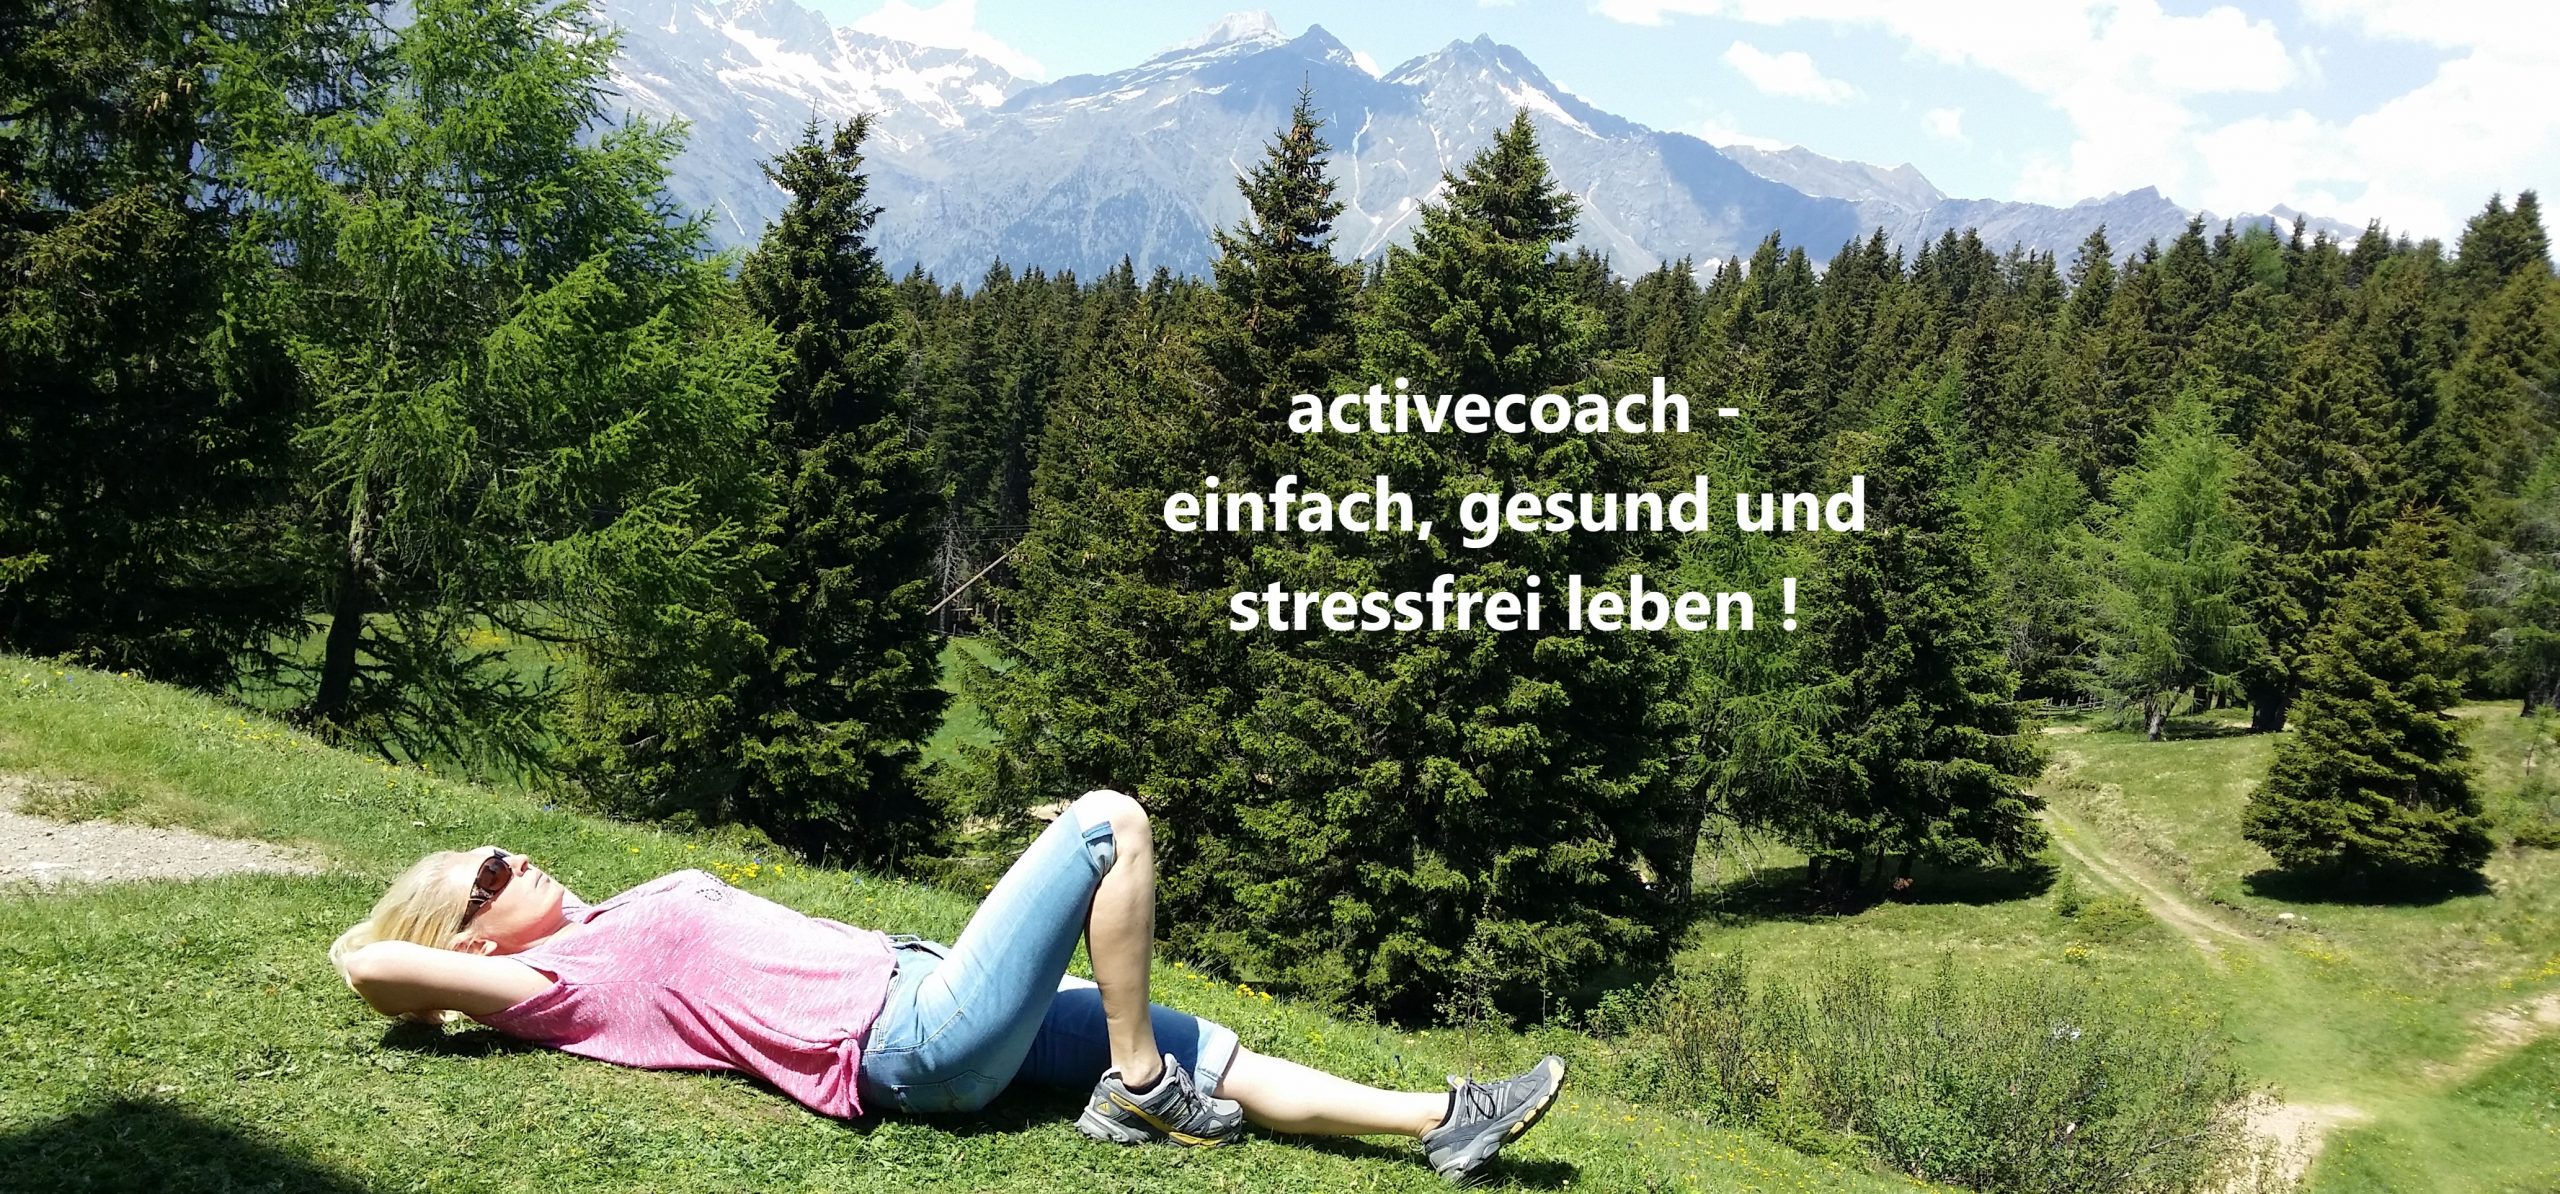 activecoach - einfach, gesund und stressfrei leben